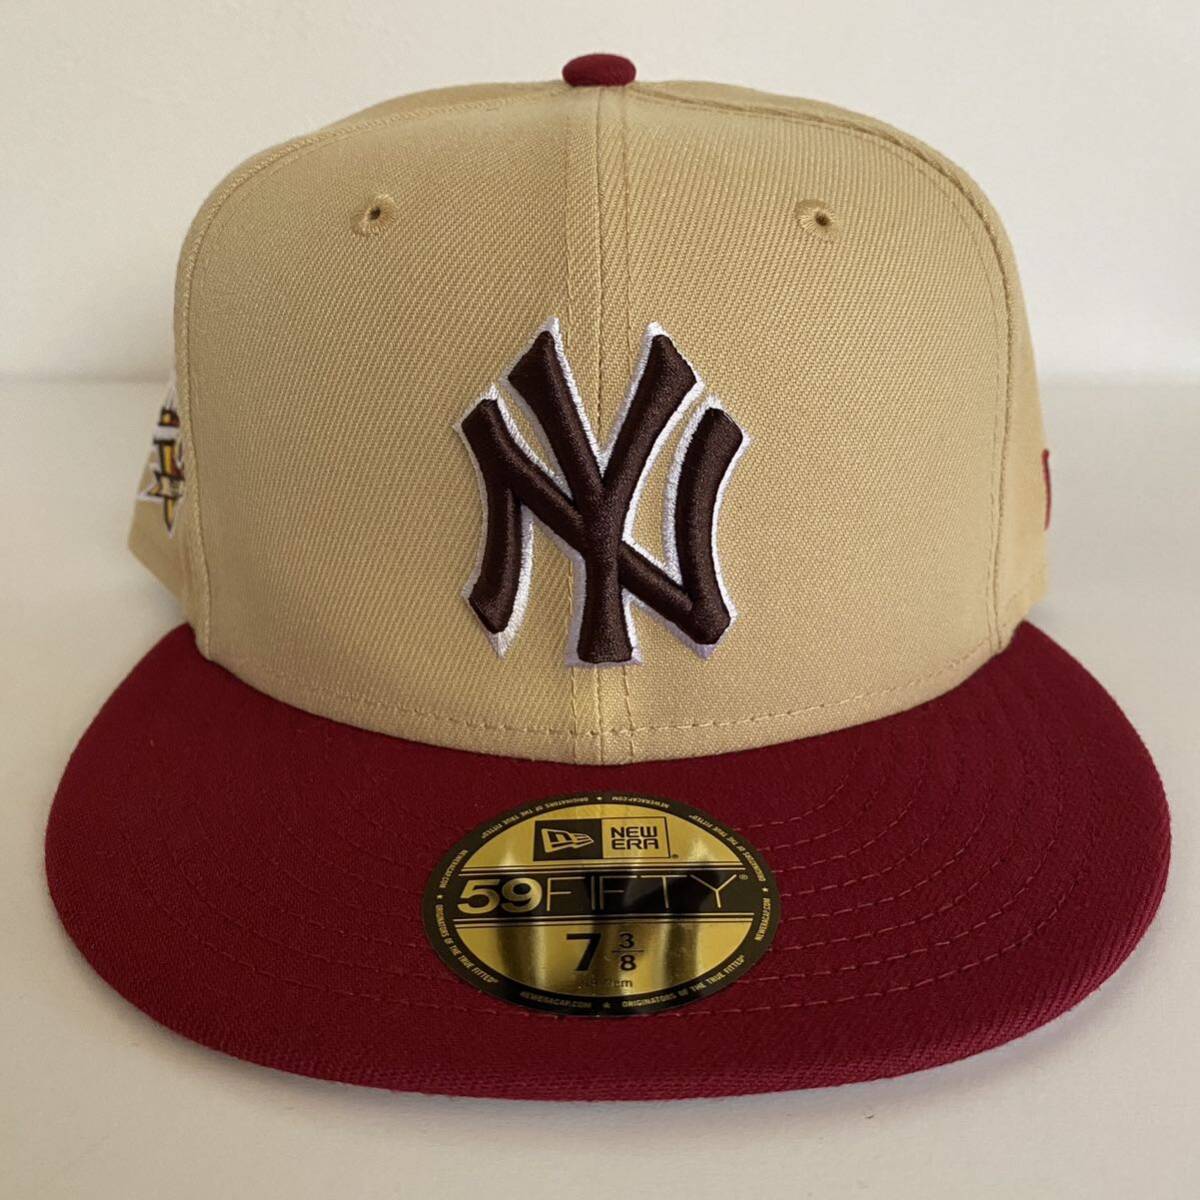 新品 New Era ツバ裏グレー NY Yankees 2Tone Khaki Red Cap 7 3/8 58.7cm ニューエラ ヤンキース 2トーン カーキ レッド キャップ 帽子